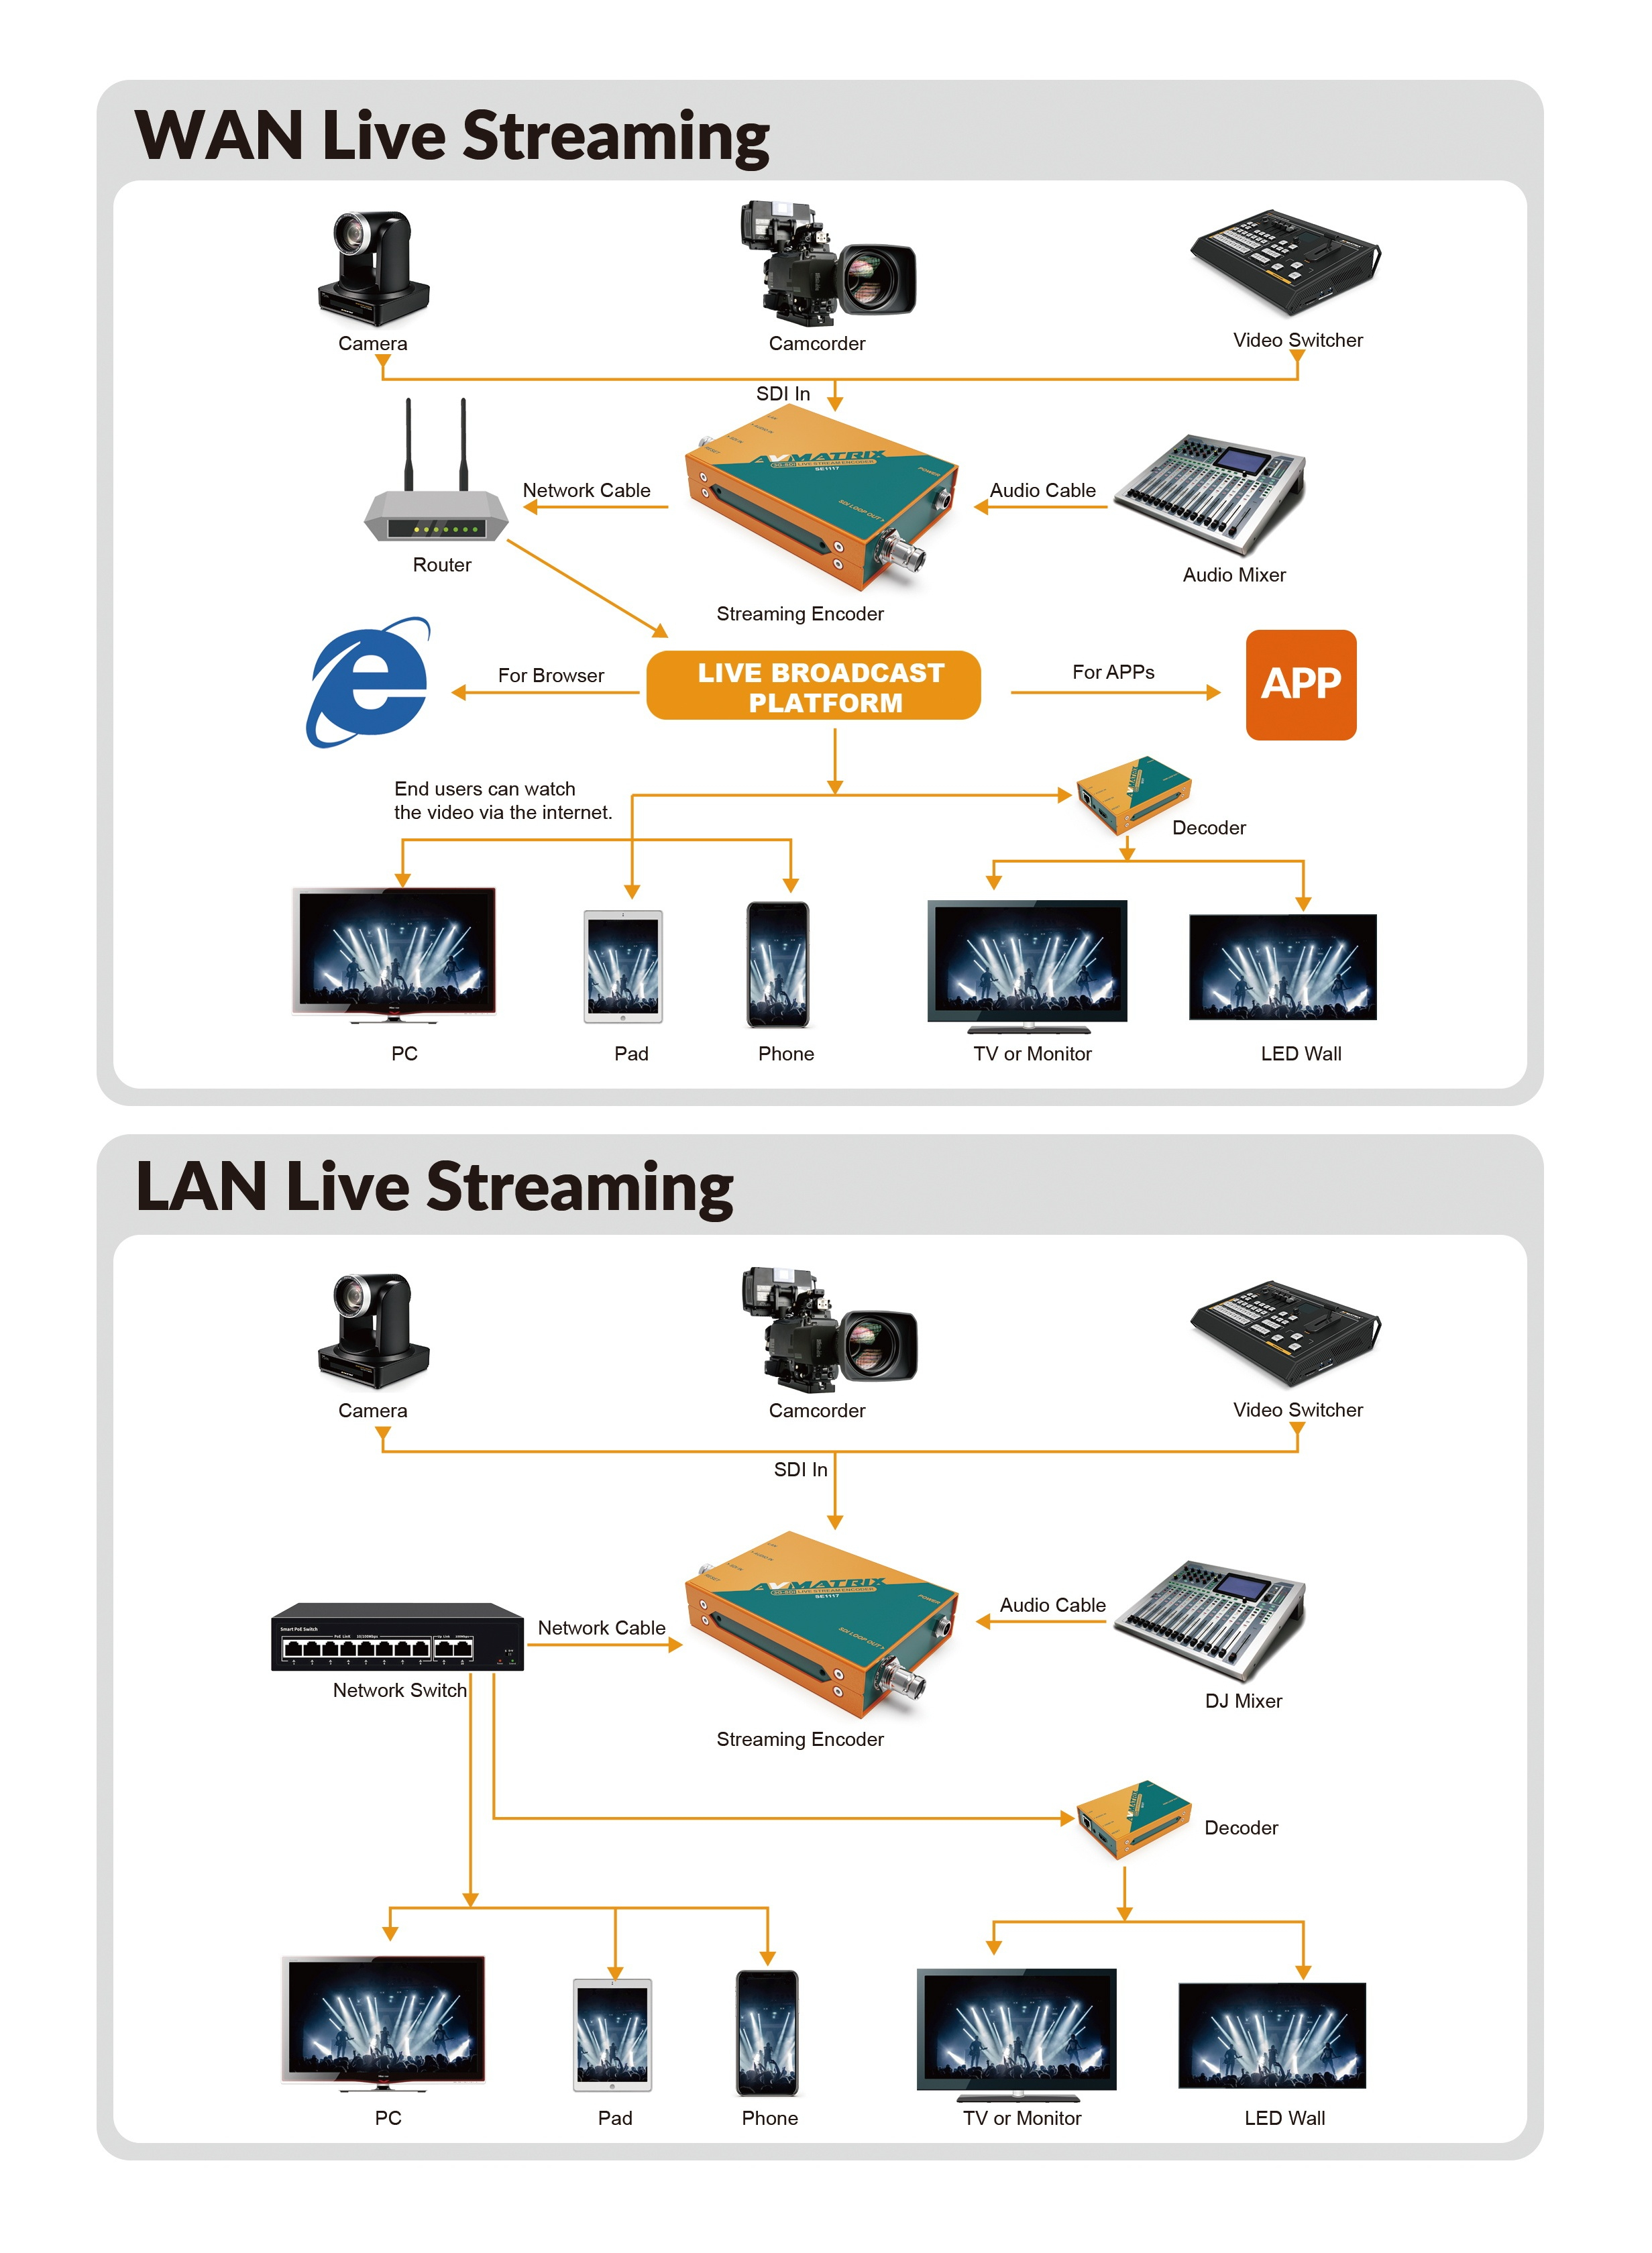 WAN Live Streaming/LAN Live Streaming